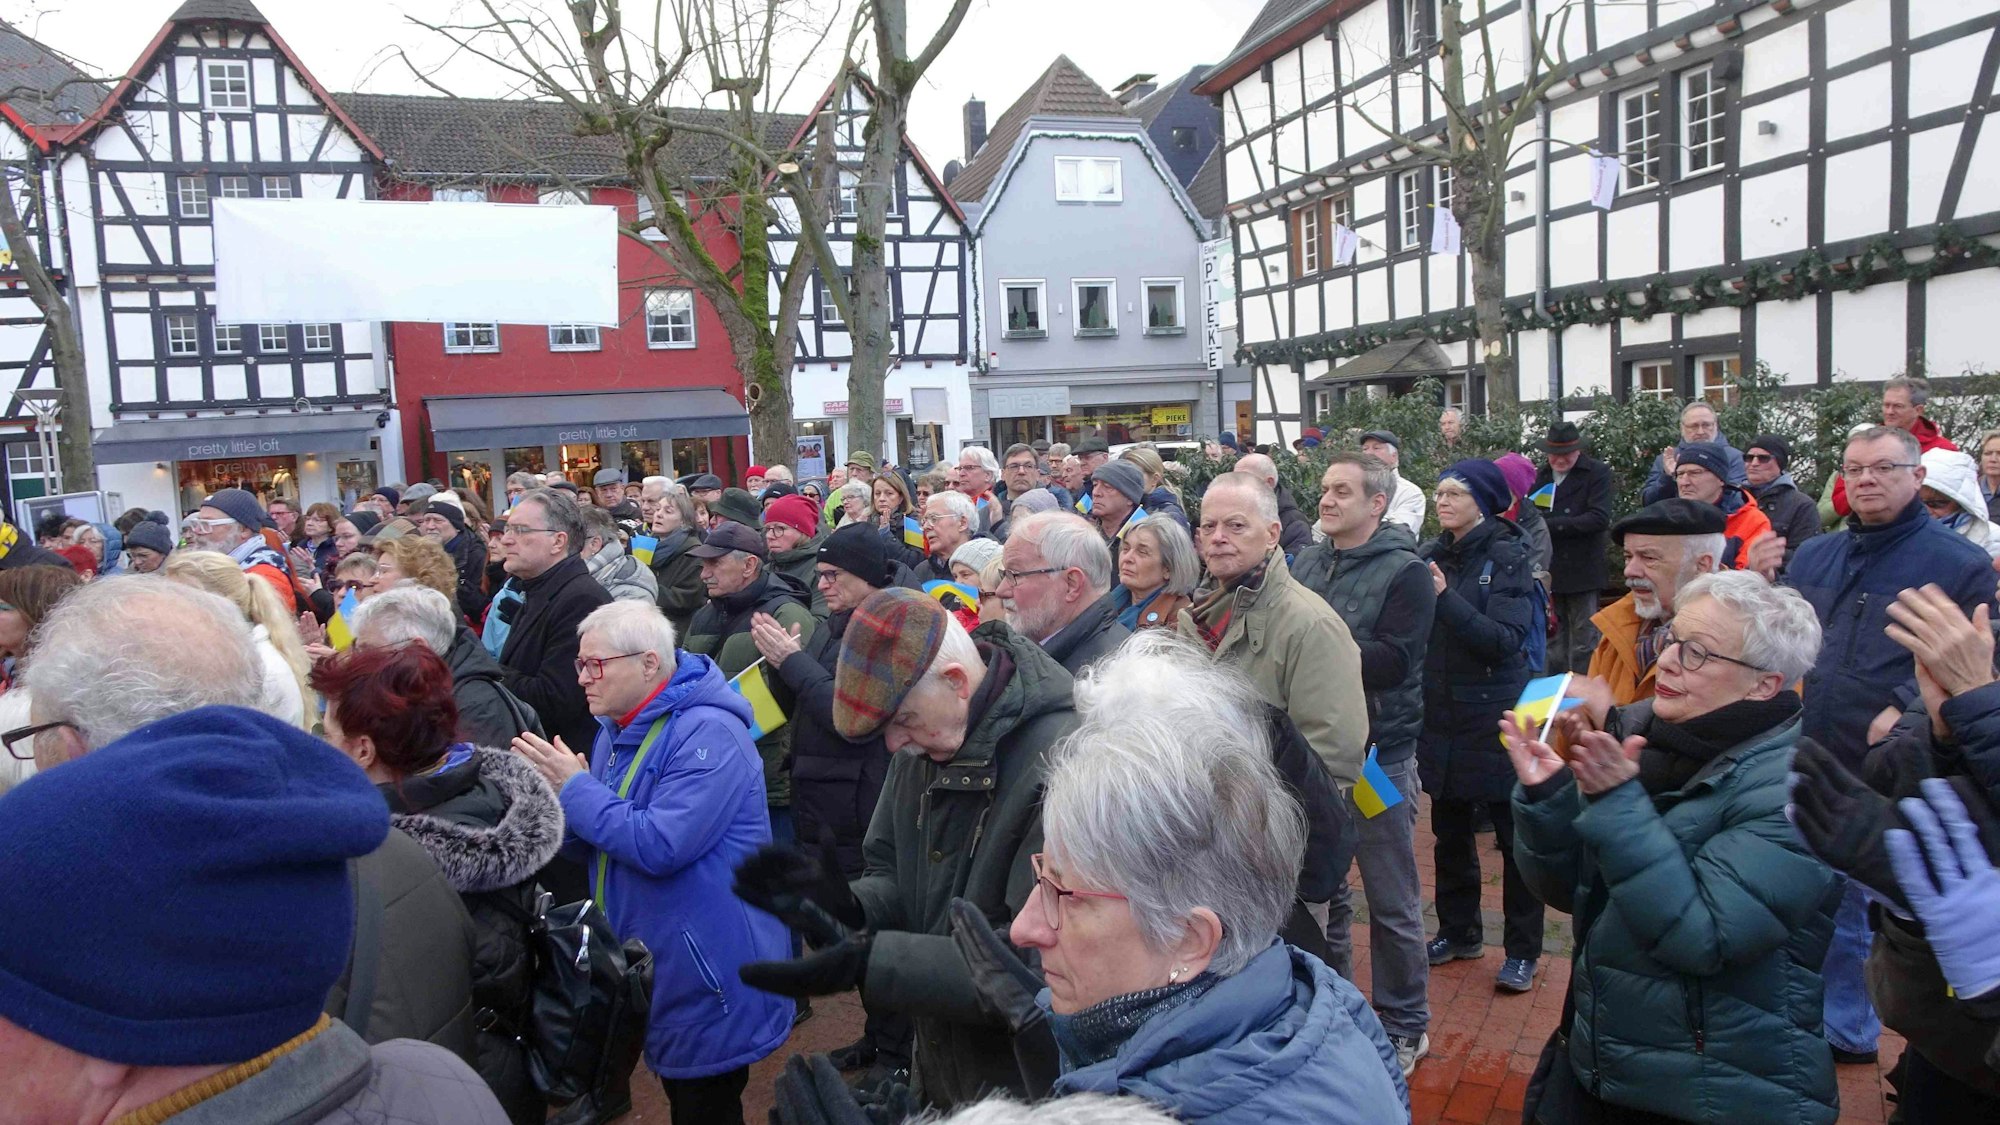 Frieden/ Peace wünschten sich rund 200 Demonstranten an der katholischen Kirche St. Martin in Rheinbach. Der Verein Partnerschaft des Friedens Rheinbach-Douamont/Vaux e.V. und Rheinbach-Hilft e.V. hatten gemeinsam zu Friedensdemo aufgerufen.